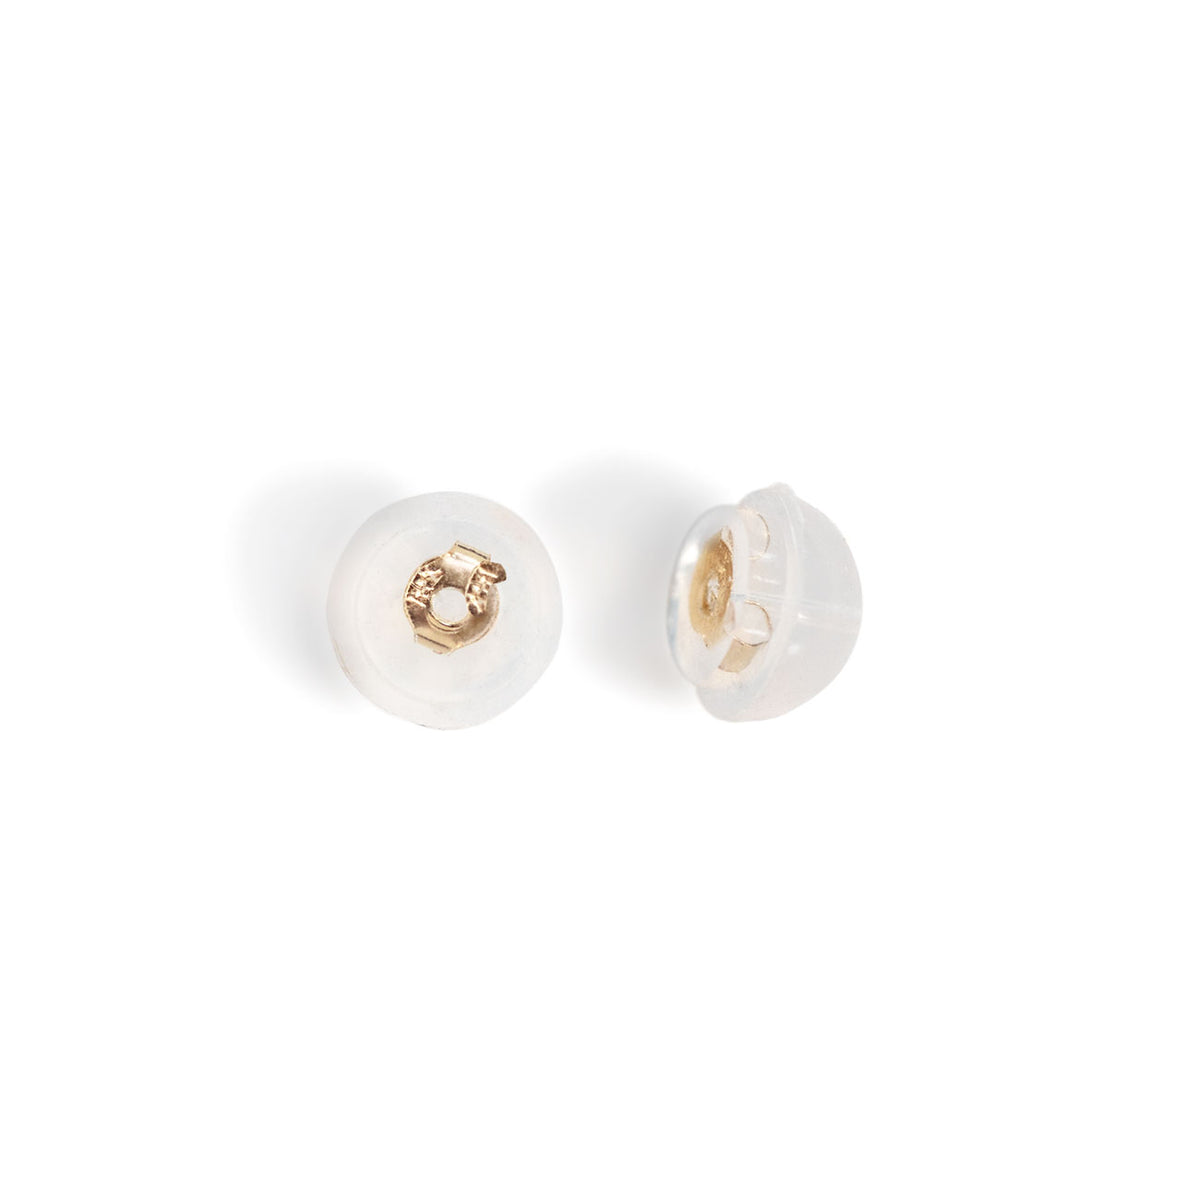 Silicone Slider Earring Backs (Promo) 14K White Gold (Pair)